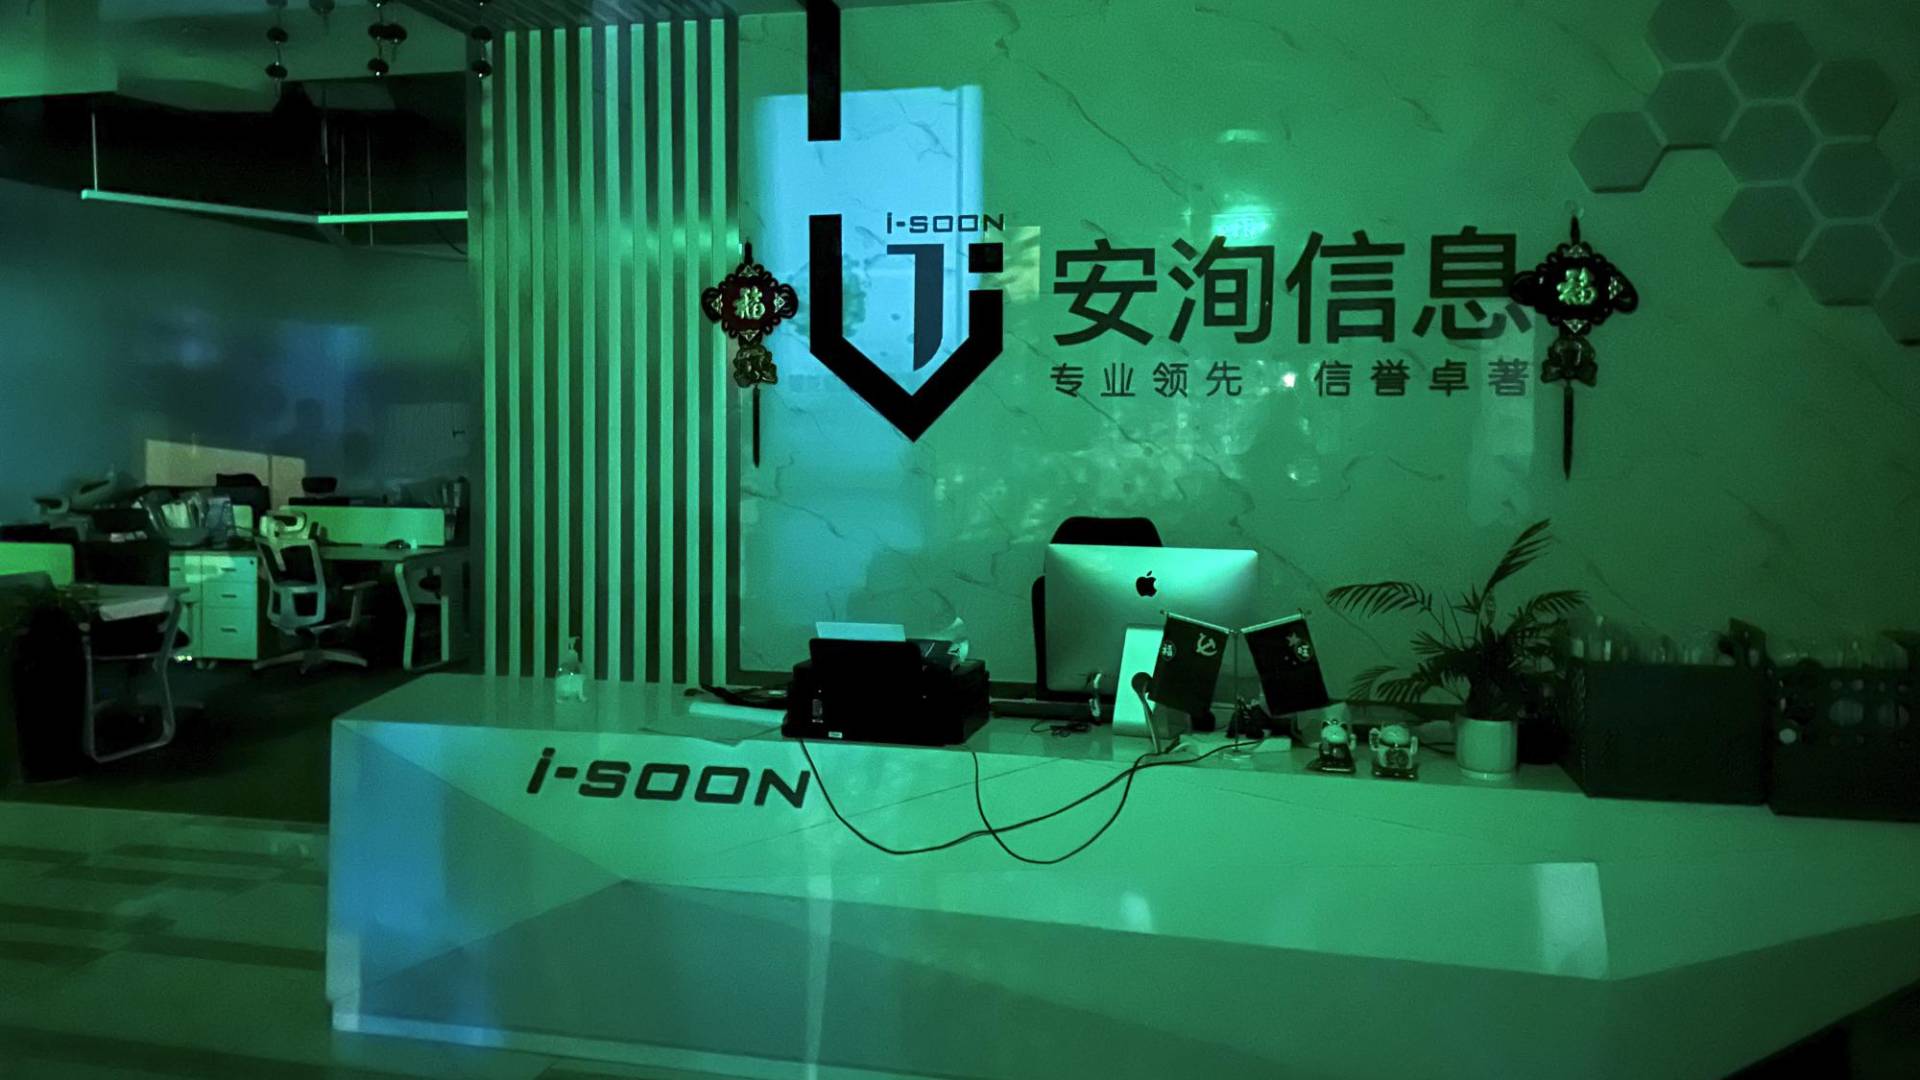 $!Las oficinas en Chengdu, China de I-Soon, empresa que apoya esfuerzos de hackeo patrocinados por el Estado.